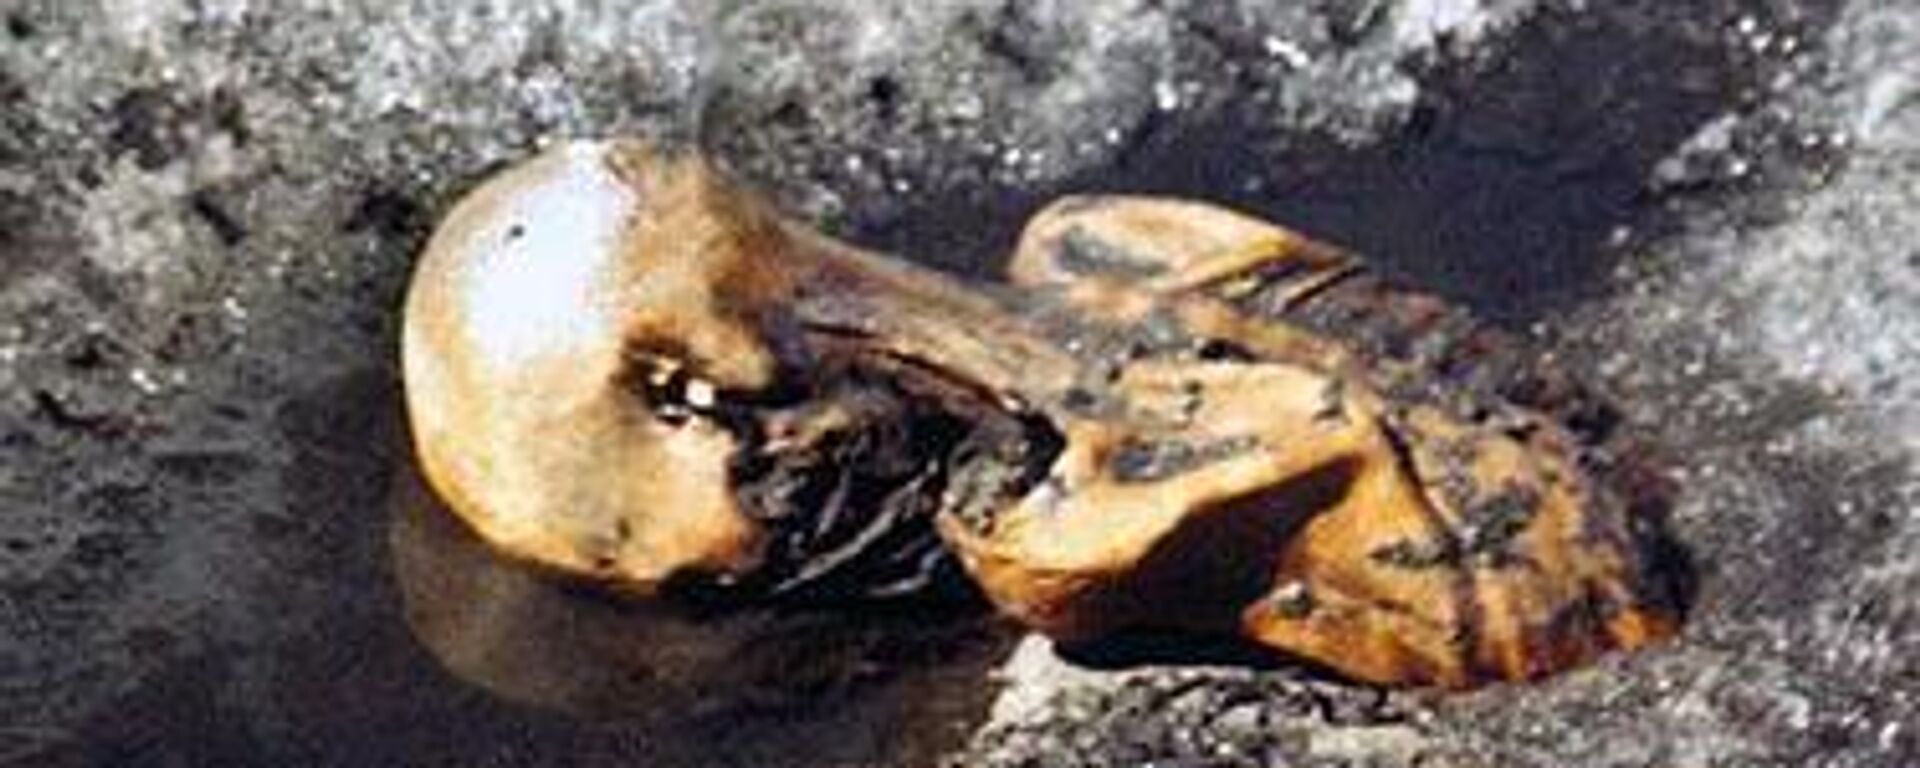 Ötzi, 'el hombre de hielo' aún congelado en el glaciar tras el descubrimiento del cadáver en septiembre de 1991 - Sputnik Mundo, 1920, 20.08.2023